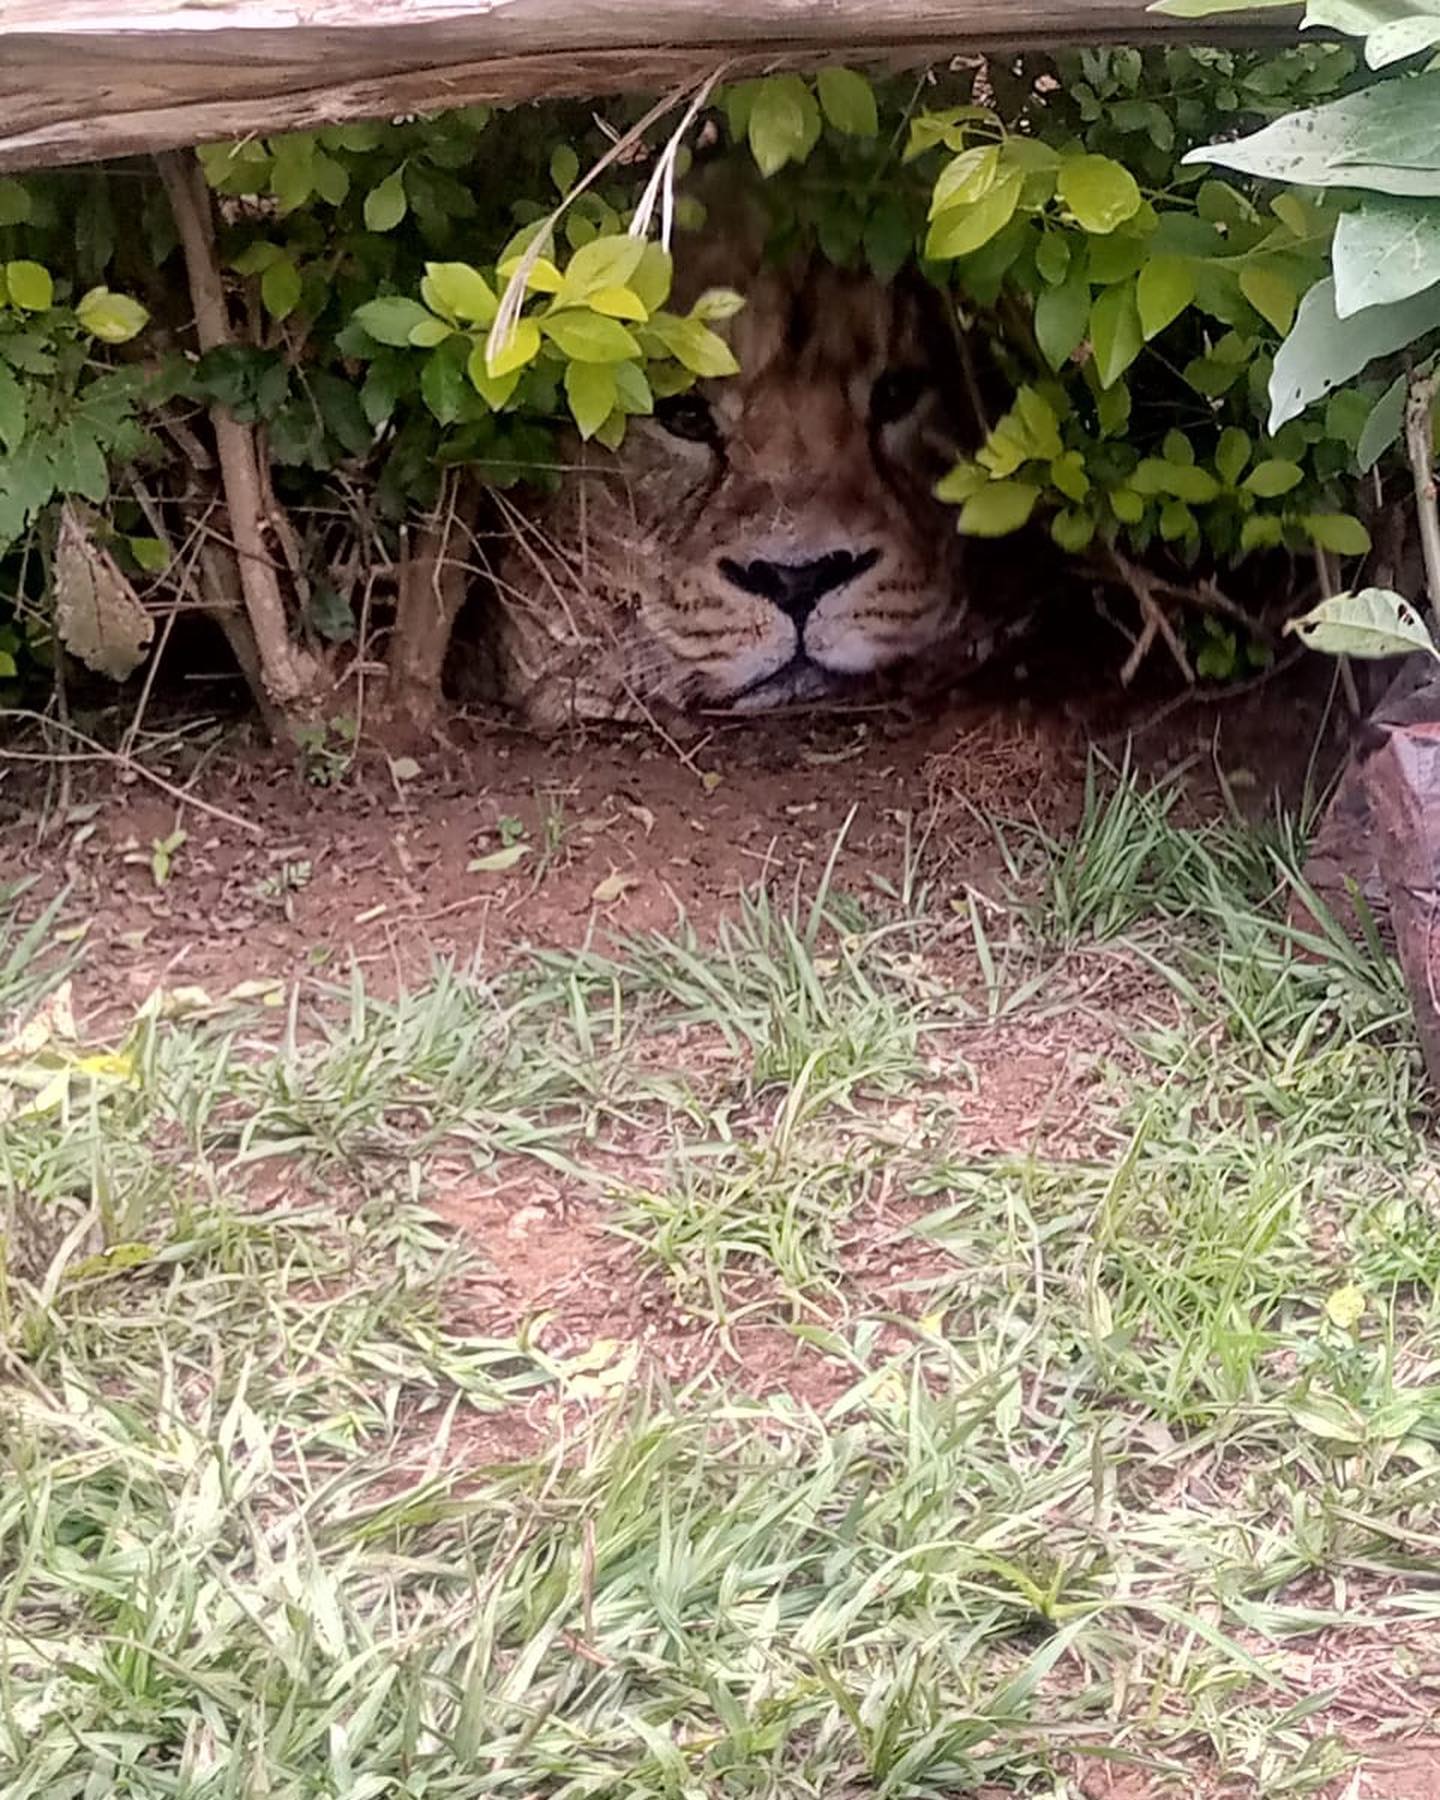 Alerta en pueblo de Kenia por león suelto en zona residencial, pero resultó ser una bolsa